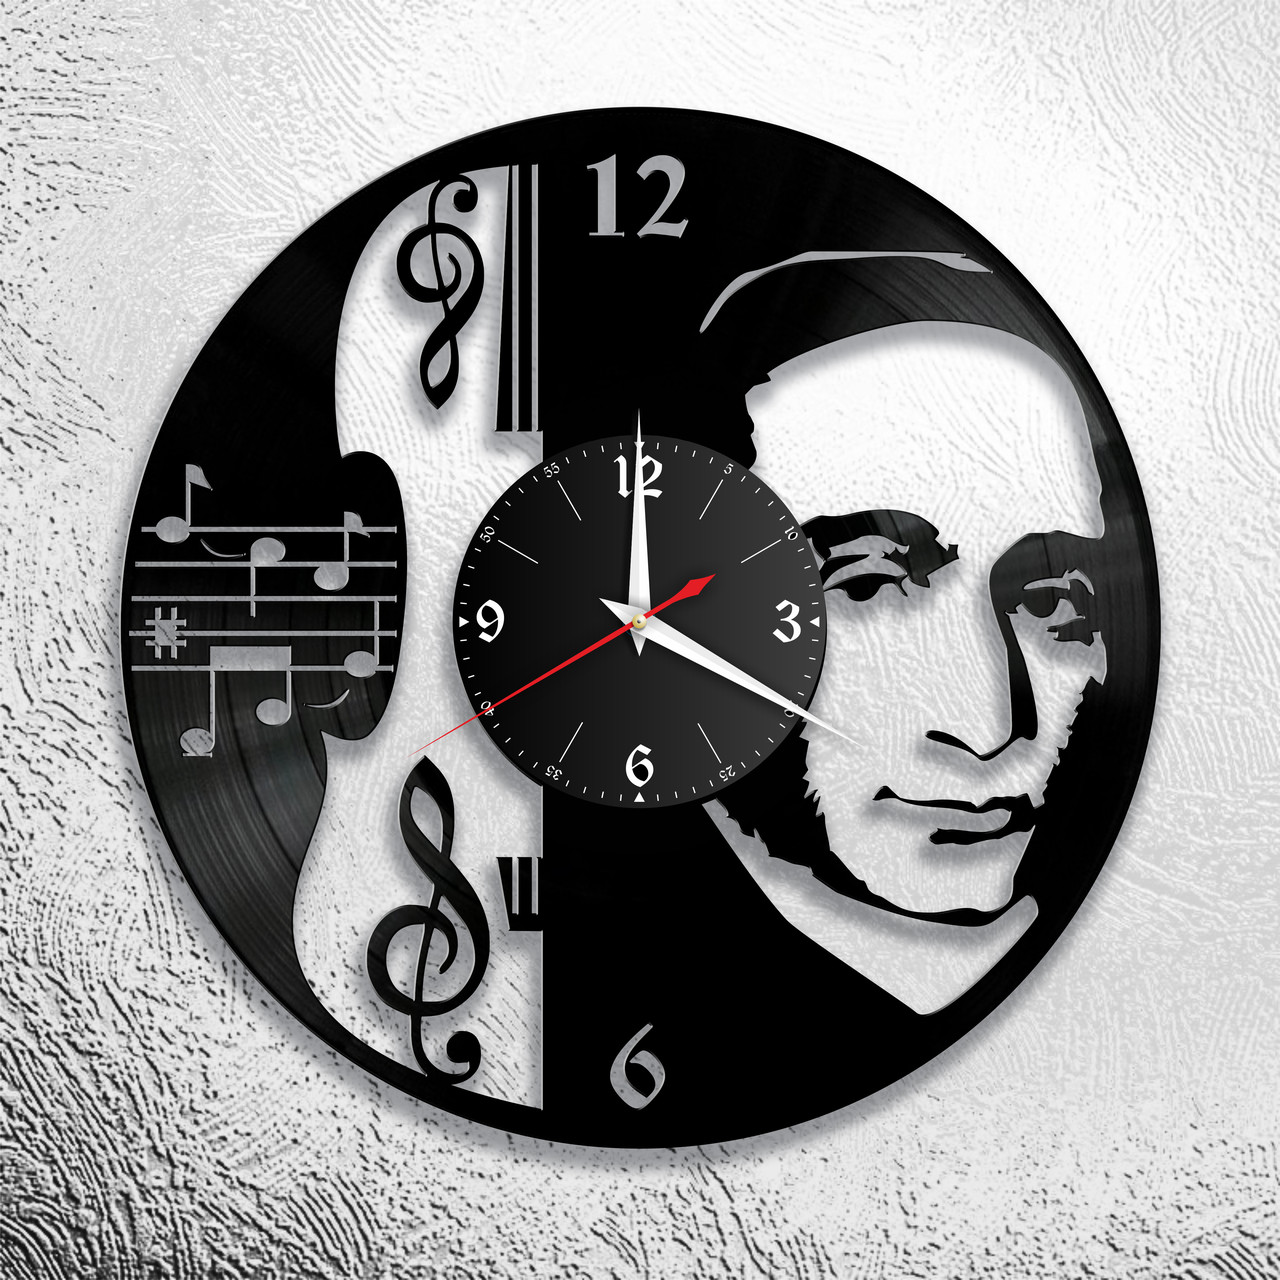 Оригинальные часы из виниловых пластинок "Паганини" версия 1, фото 1